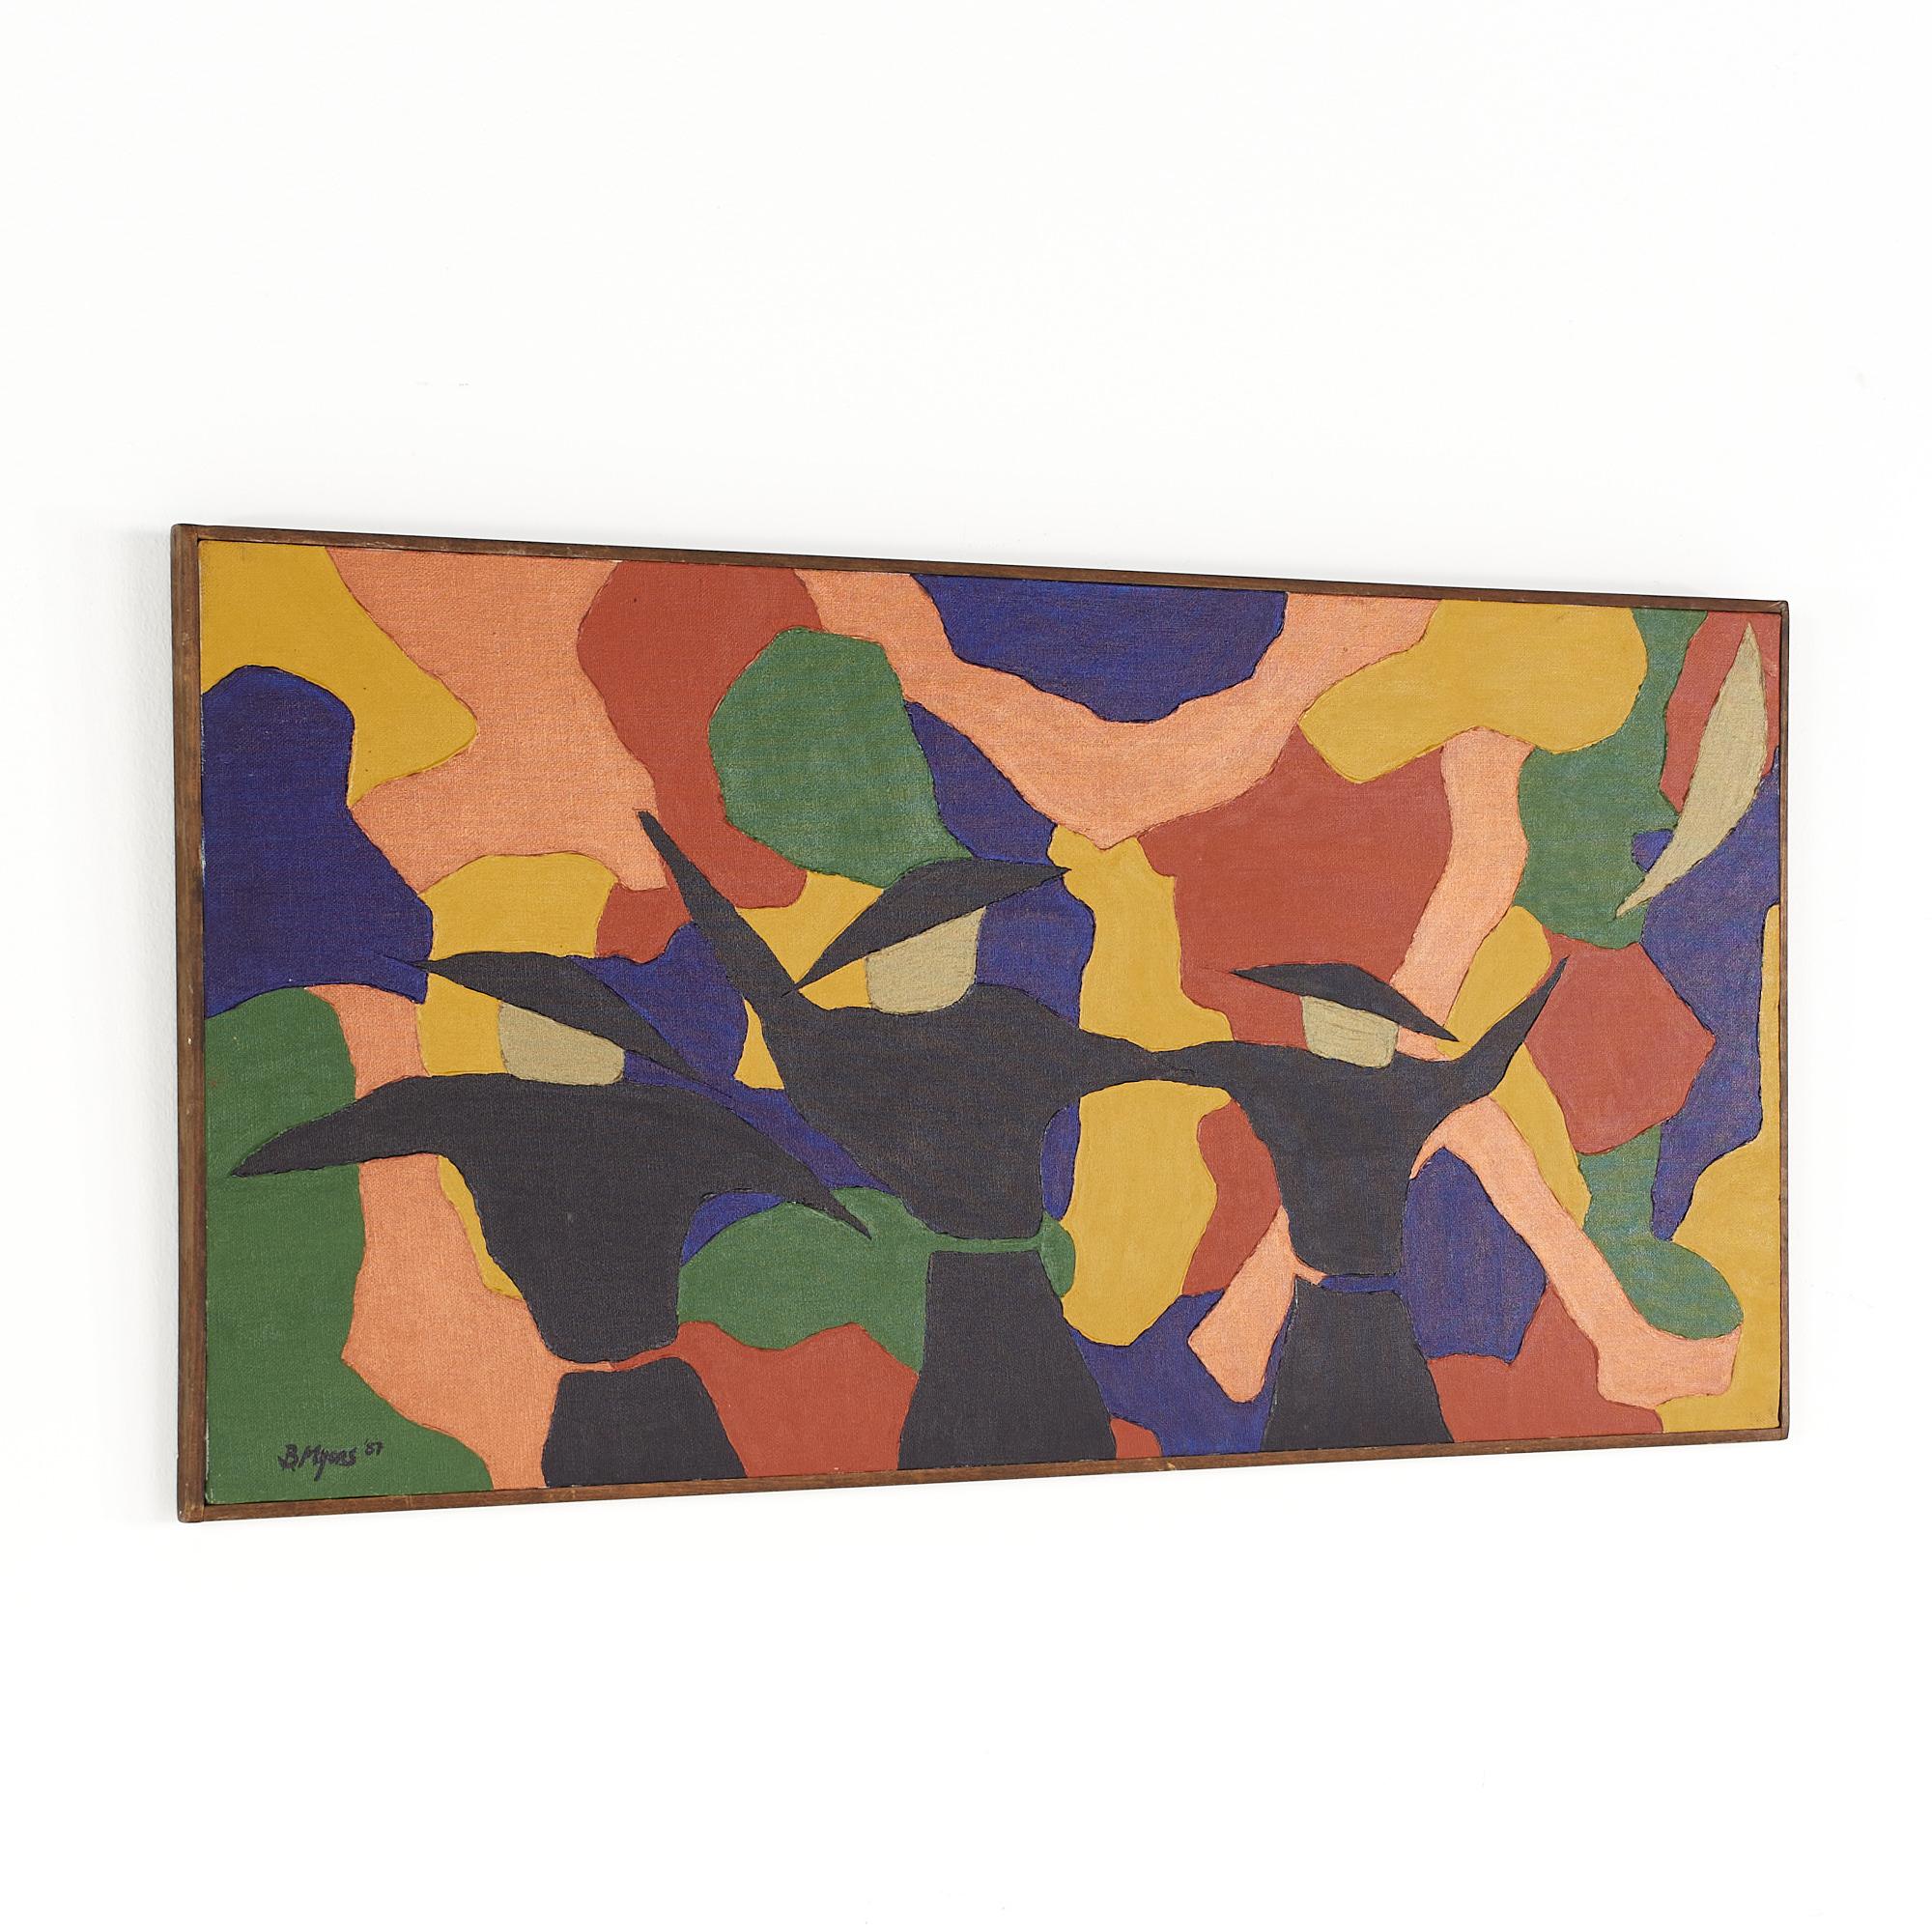 Bruce Myers Mitte des Jahrhunderts signiert abstrakte Original Öl auf Leinwand Gemälde

Dieses Gemälde misst: 30,5 breit x 0,75 tief x 15,5 Zoll hoch

Dieses Gemälde ist in gutem Vintage-Zustand.

Wir machen unsere Fotos in einem Studio mit